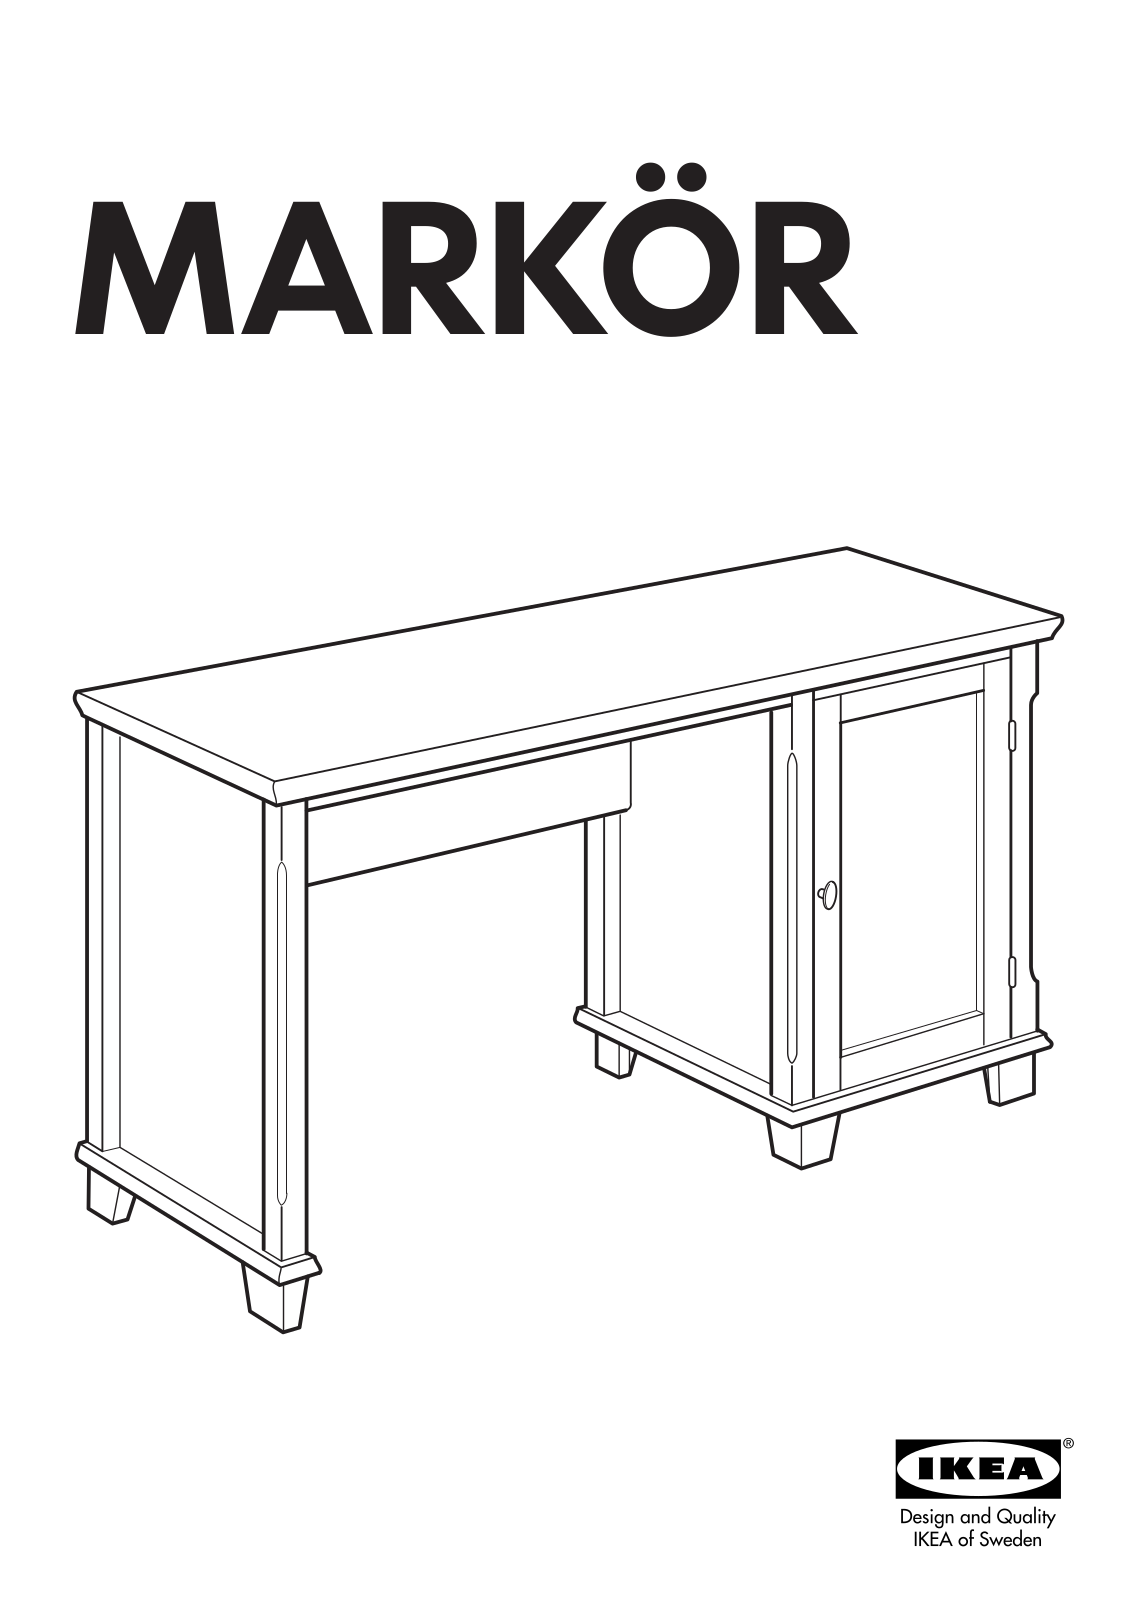 IKEA MARKOR User Manual